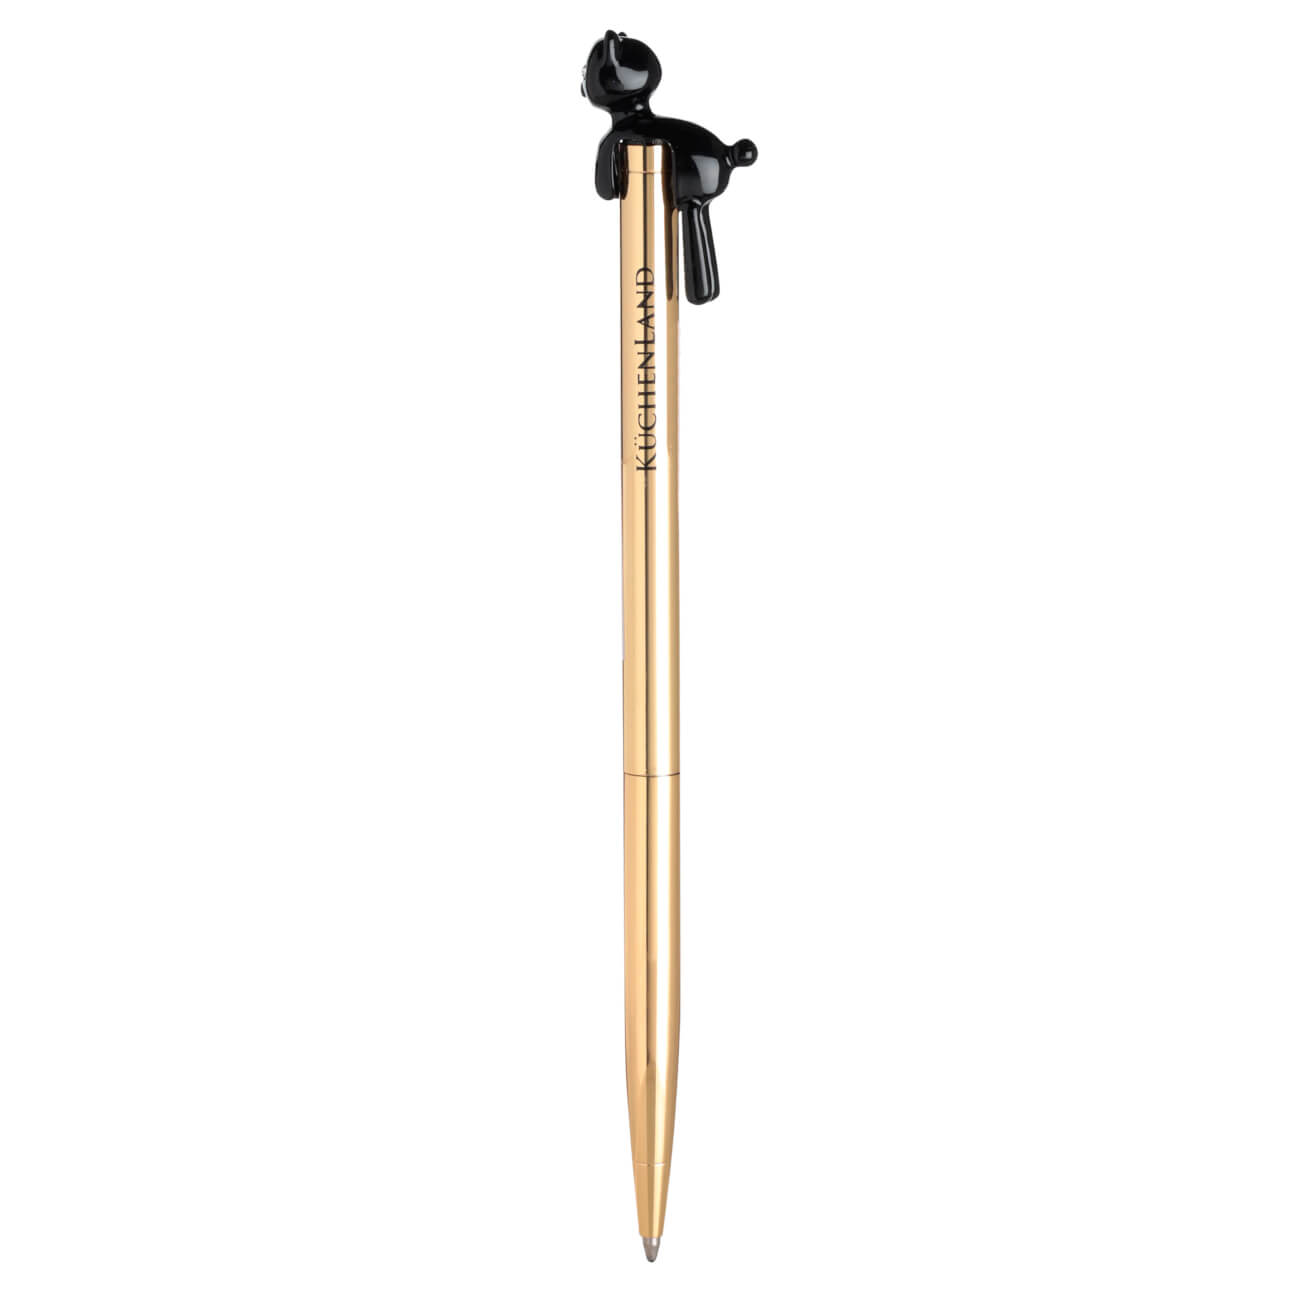 Ручка шариковая, 14 см, с фигуркой, металл, золотистая, Черный кот, Draw figure ручка скоба kerron 128 мм золото s 2171 128 ot